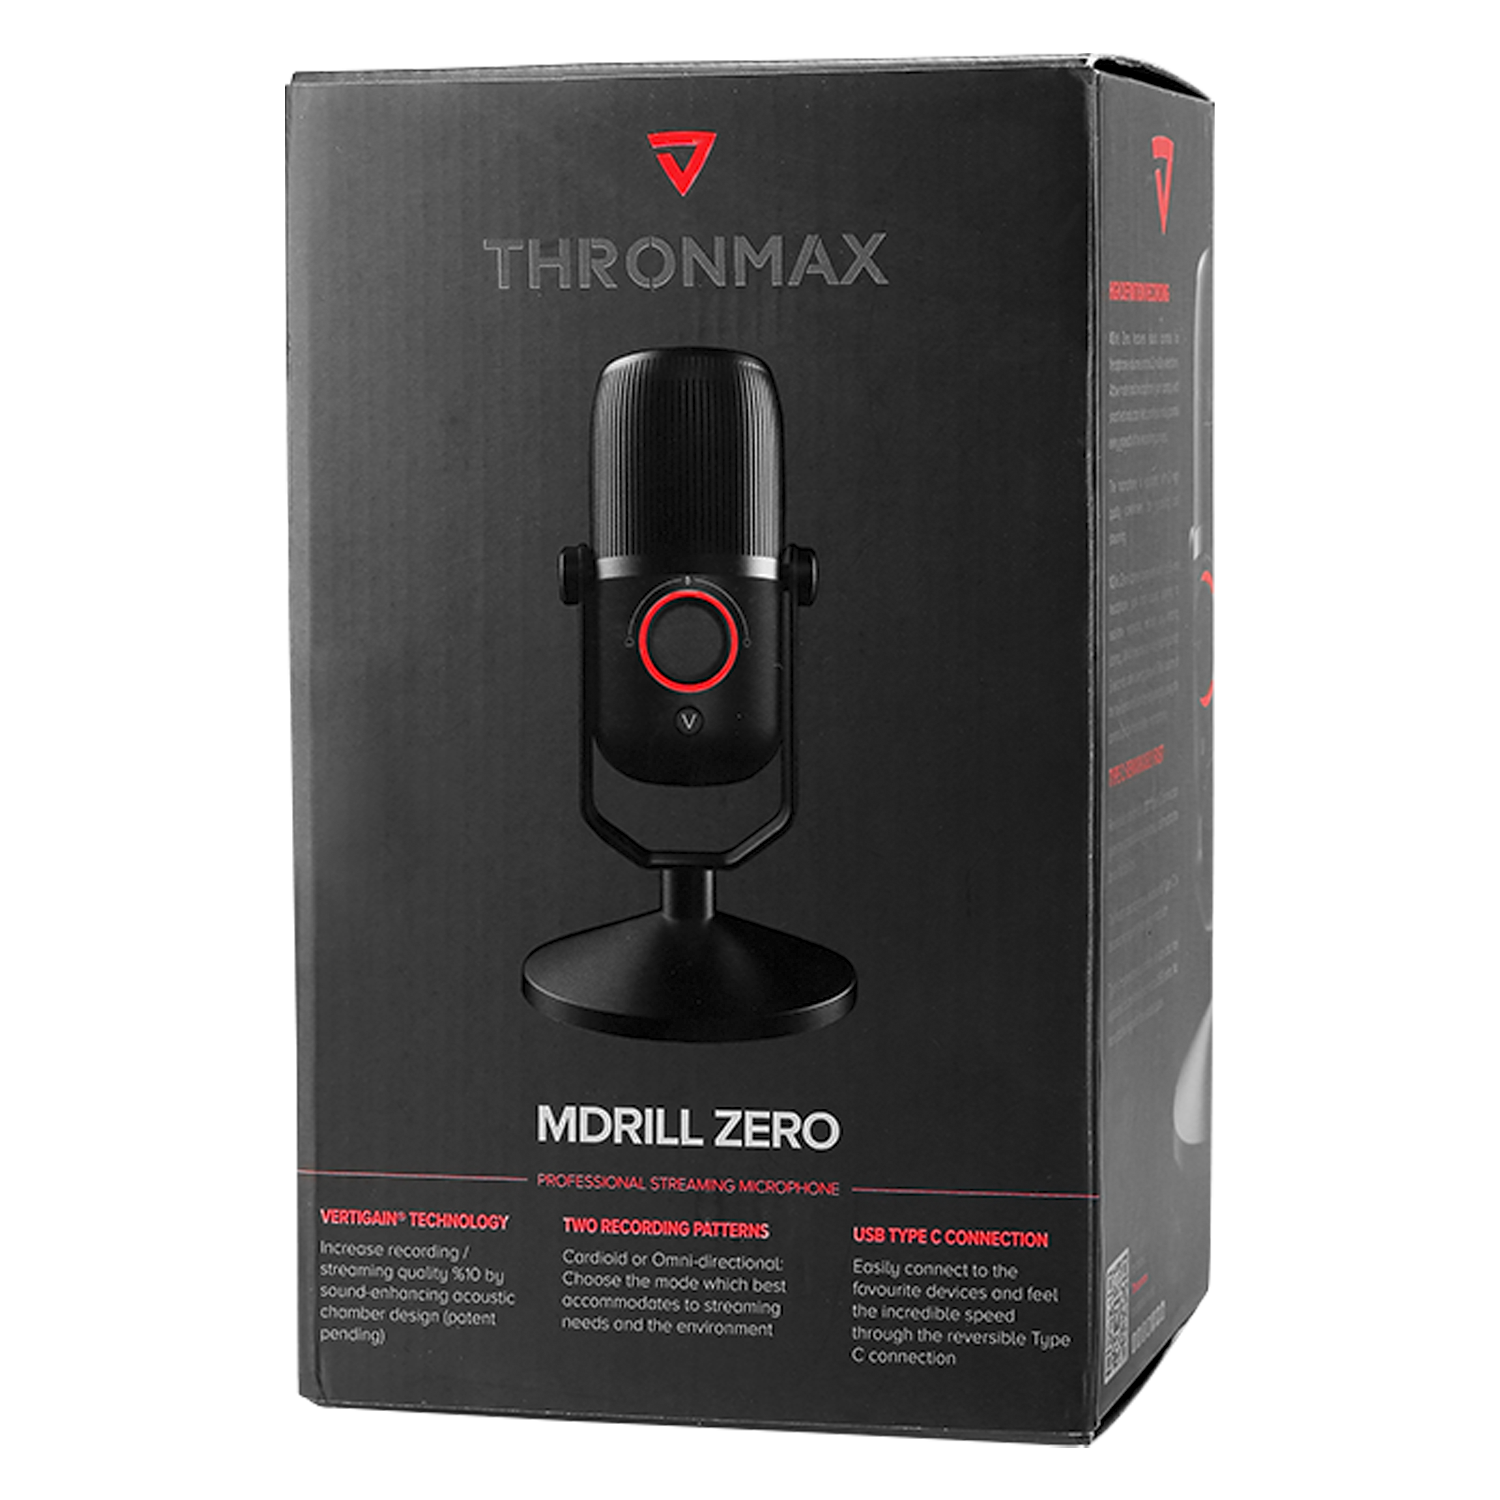 Microfone Thronmax Mdrill Zero M4 USB TYPE C - Preto